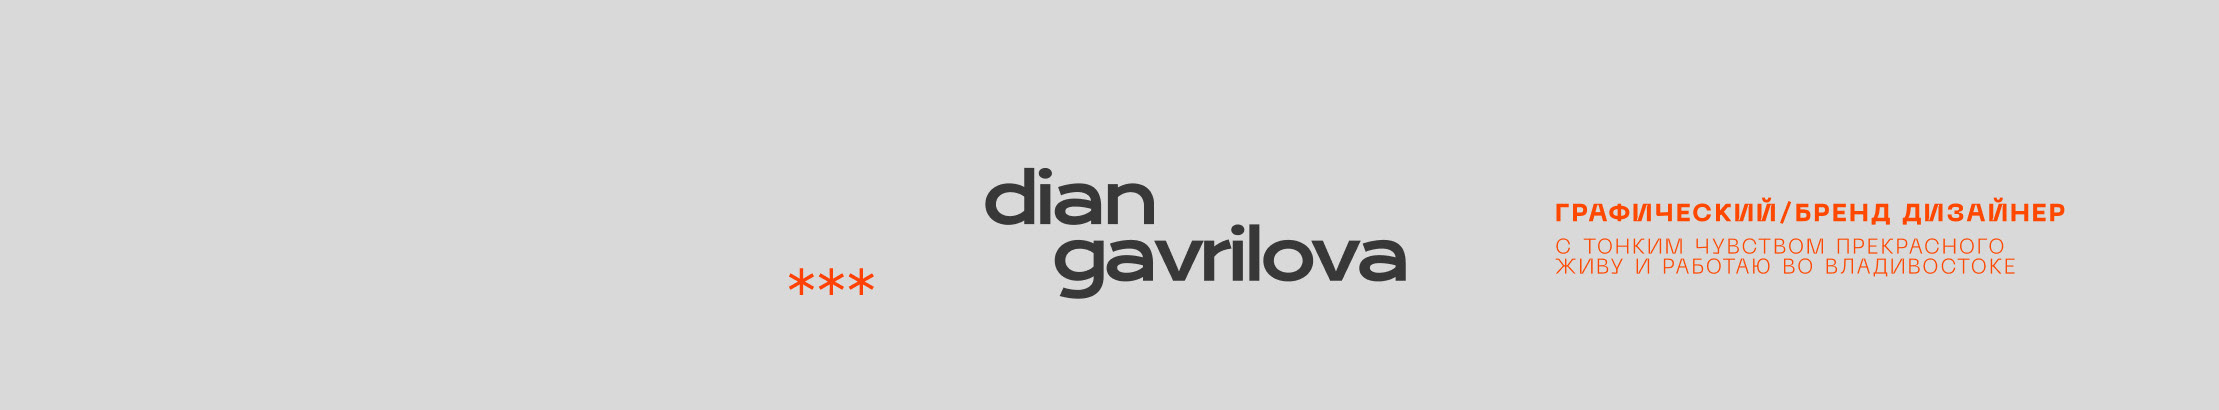 Diana Gavrilova 的個人檔案橫幅